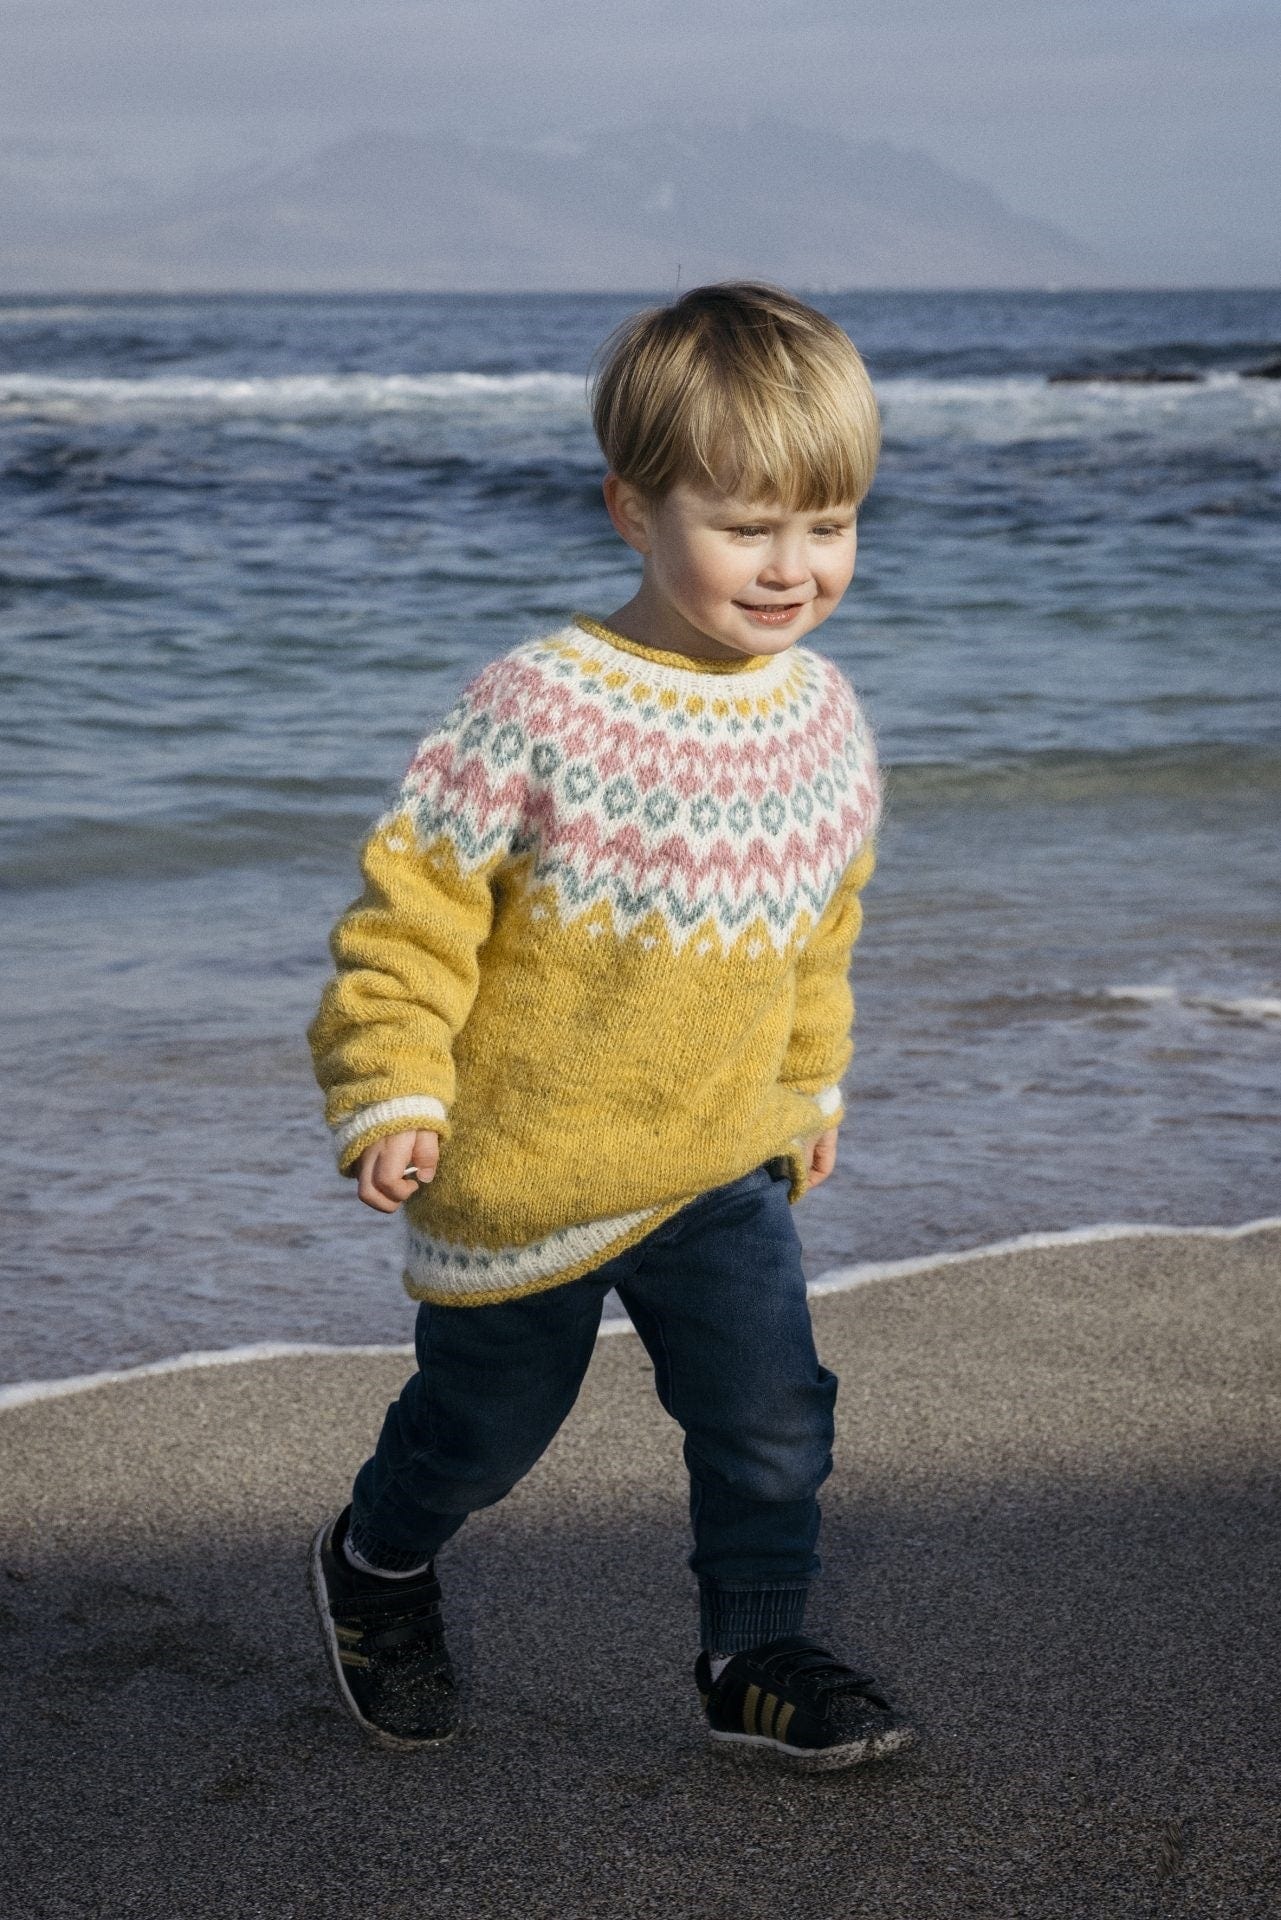 Riddari - children sweater- Free Wool Sweater Knitting pattern Download - The Icelandic Store